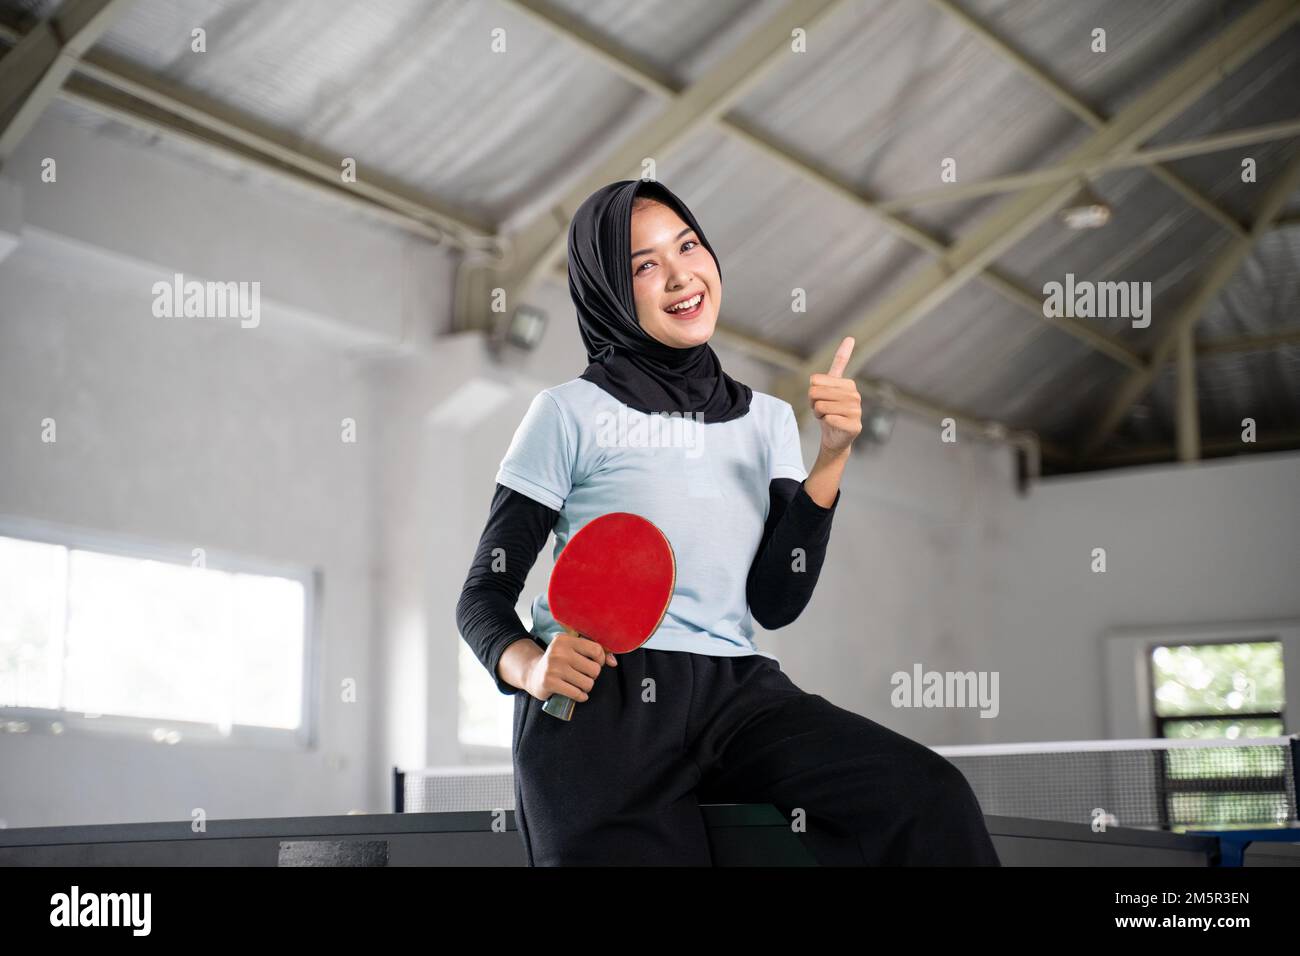 smiling hijabi female athlete holding paddle with thumbs up Stock Photo